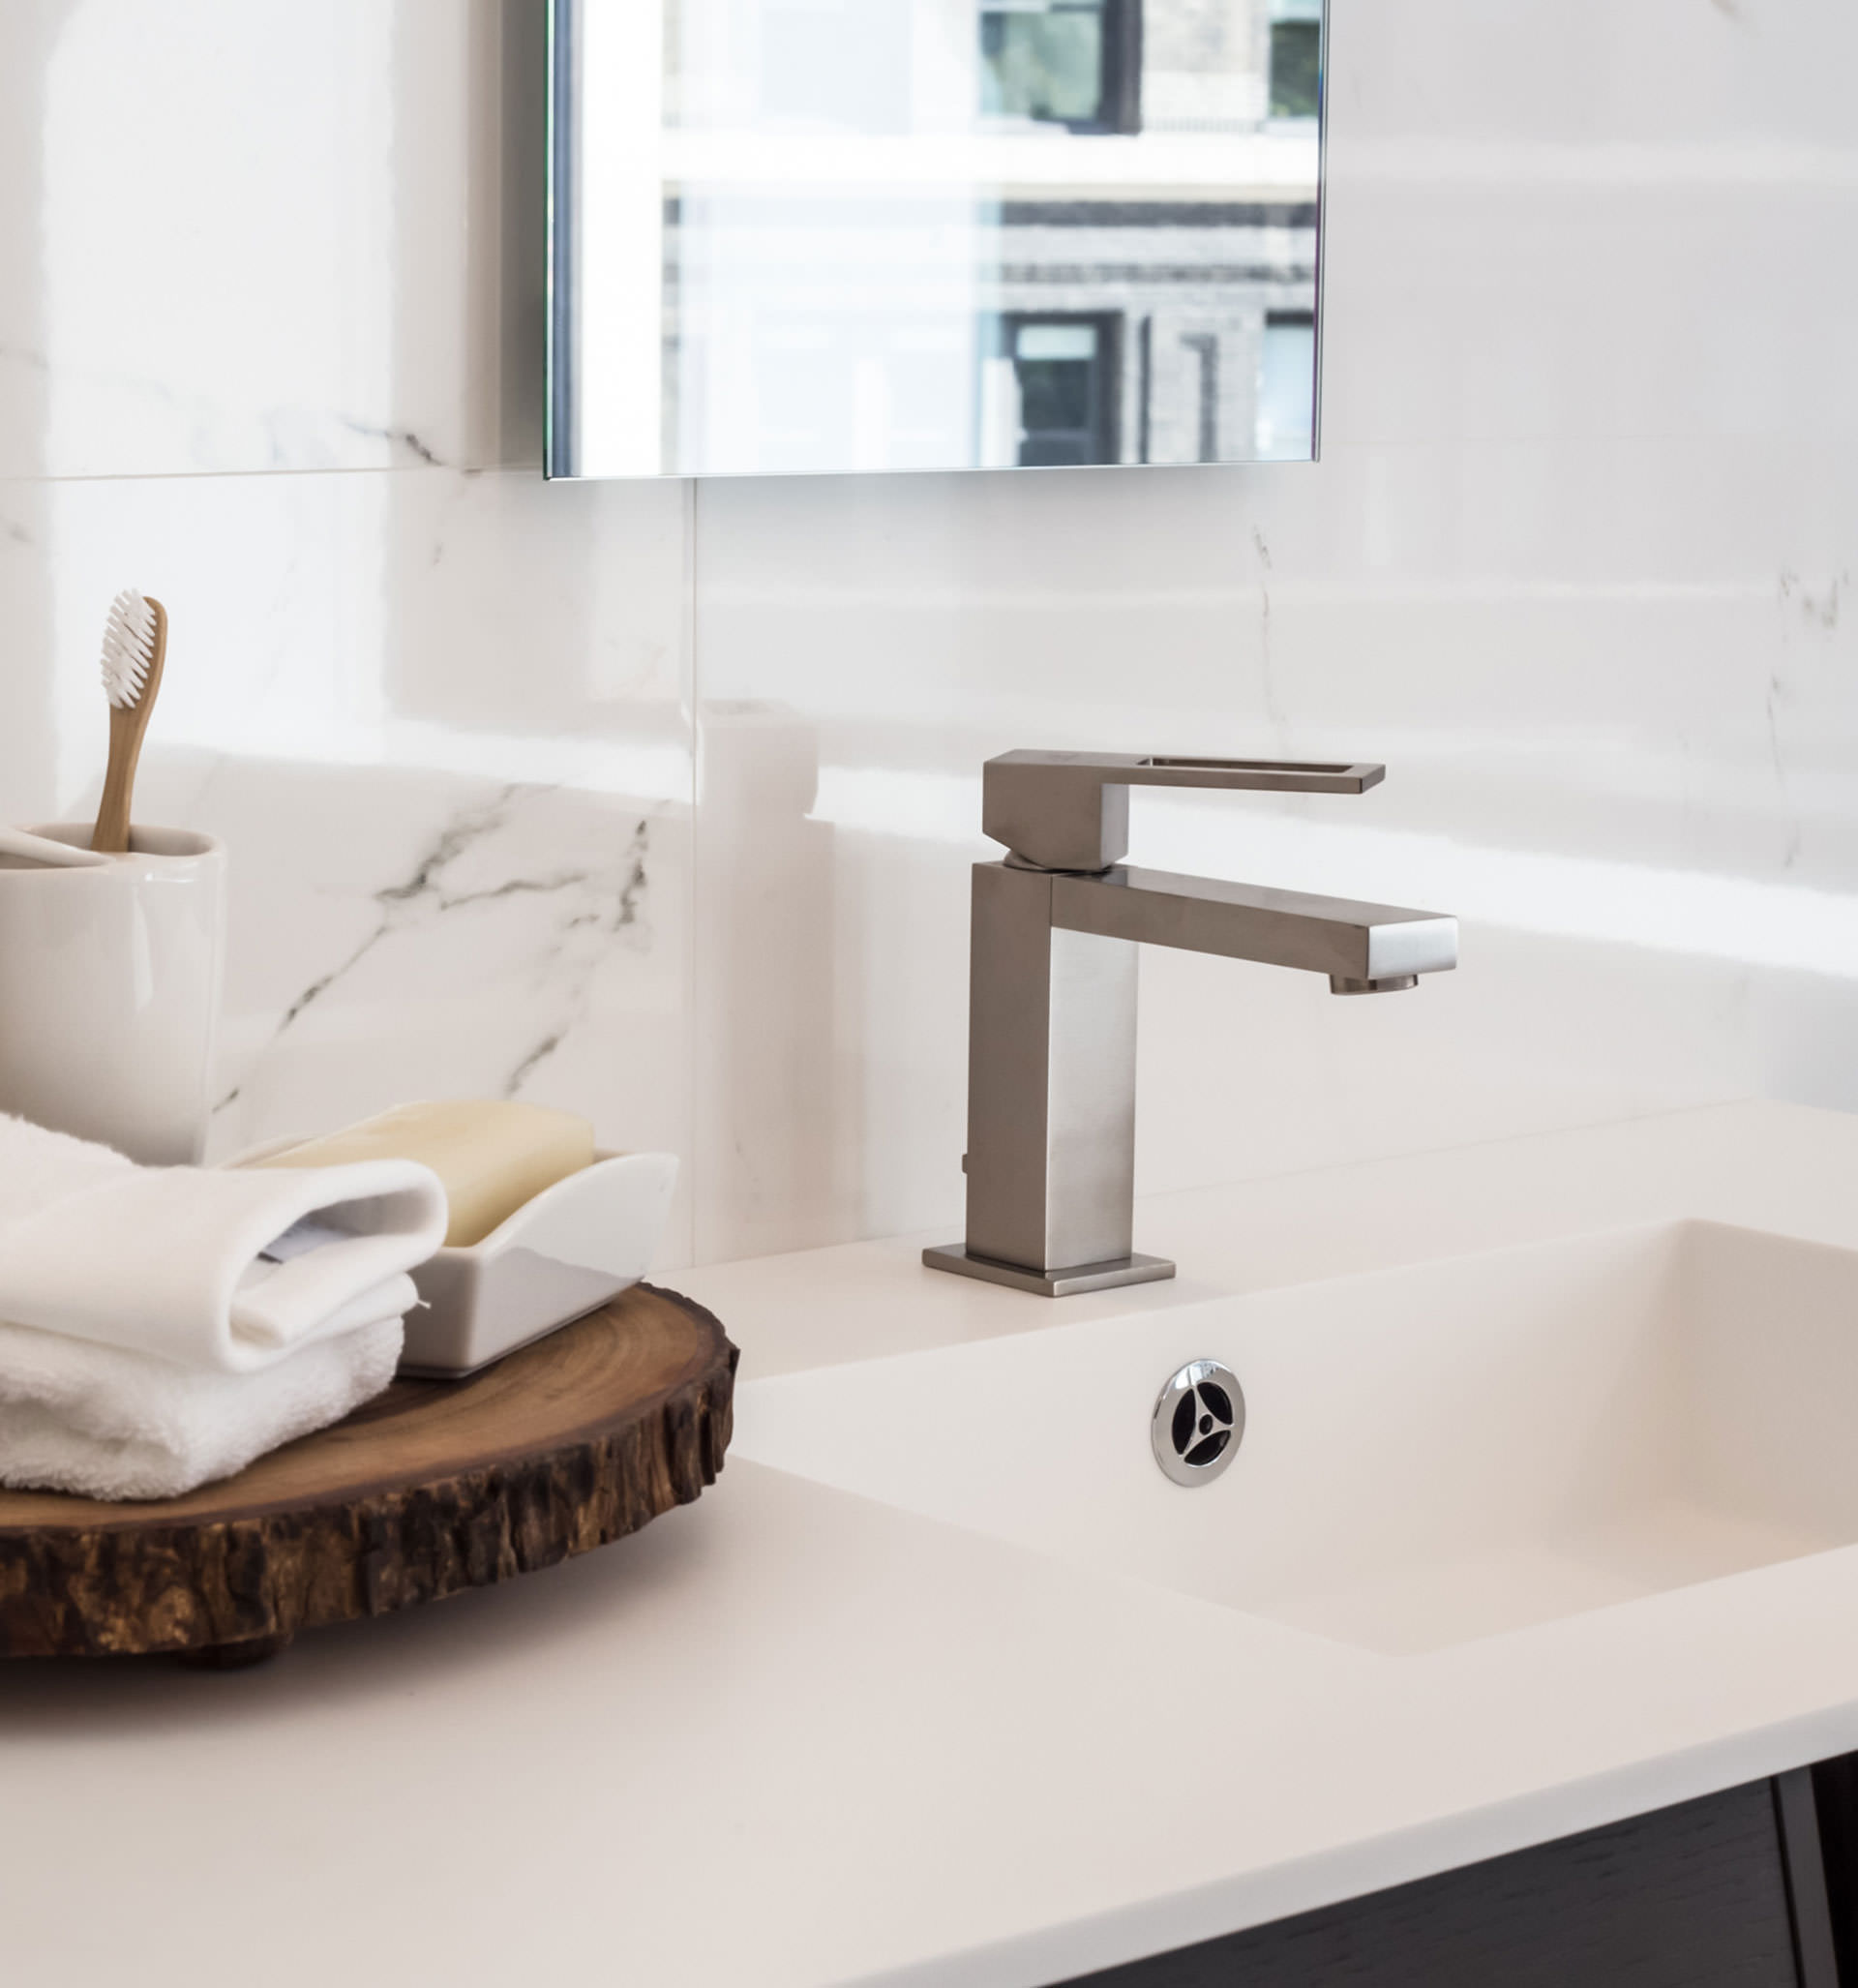 Detailansicht eines weißen Waschbeckens mit Zahnputzbecher, Seifenschale und Handtuch auf einer Holzscheibe